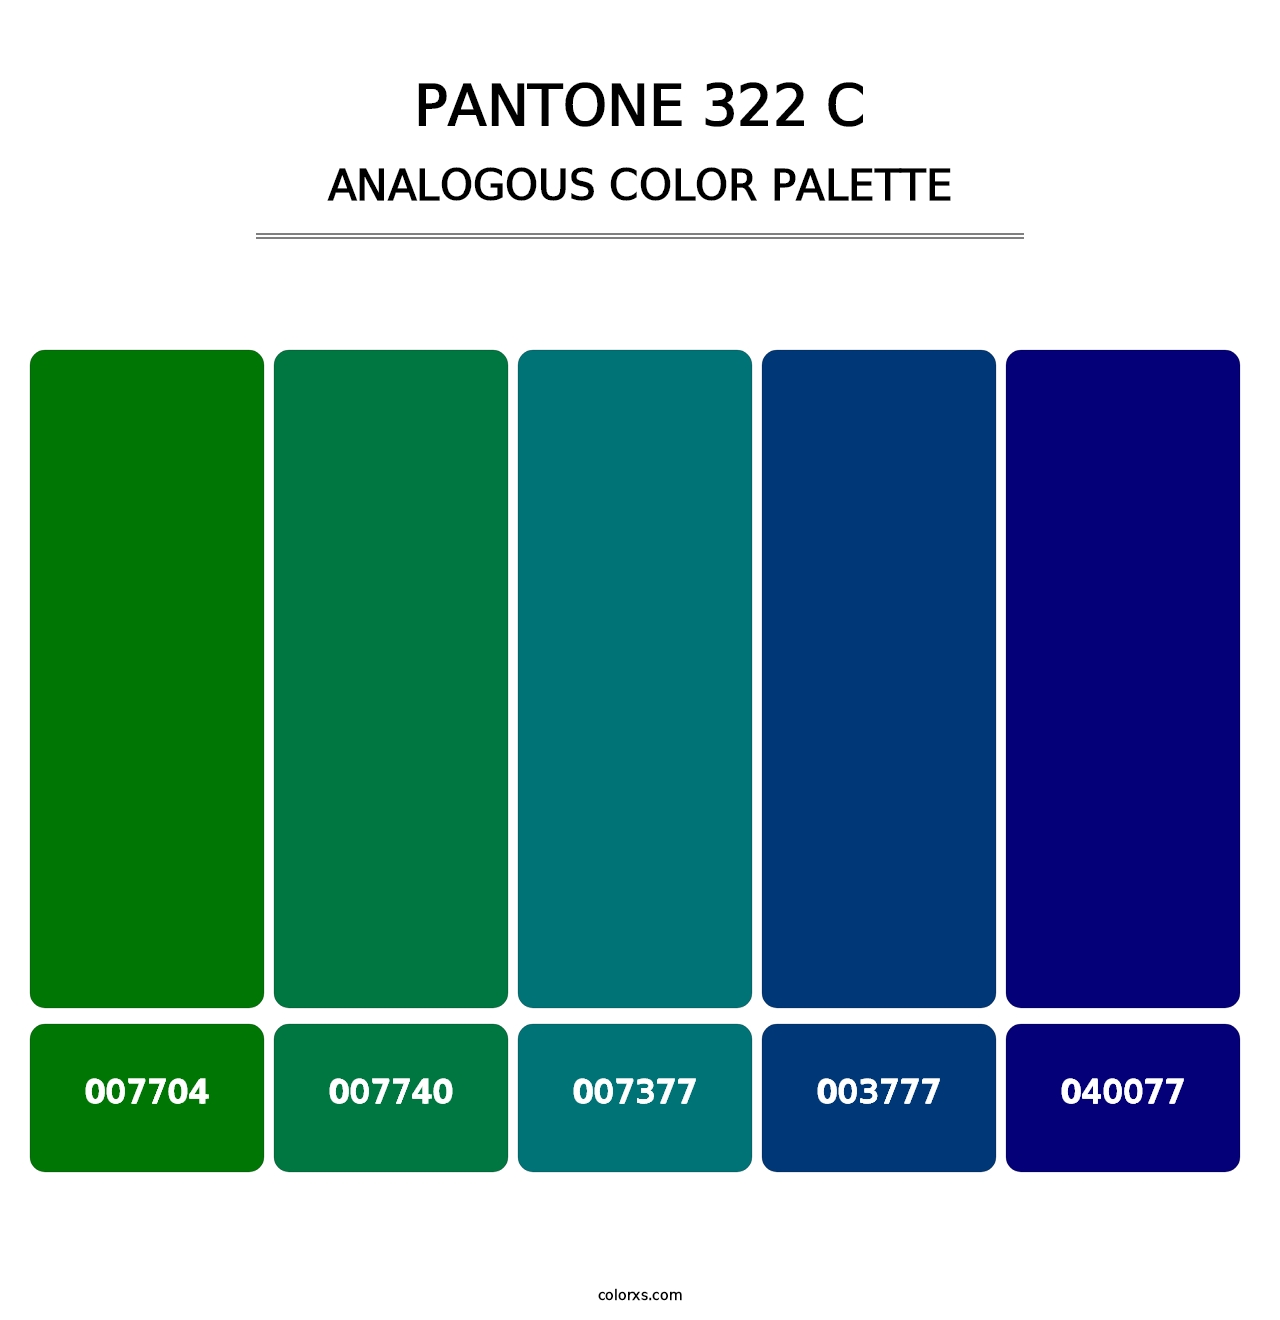 PANTONE 322 C - Analogous Color Palette